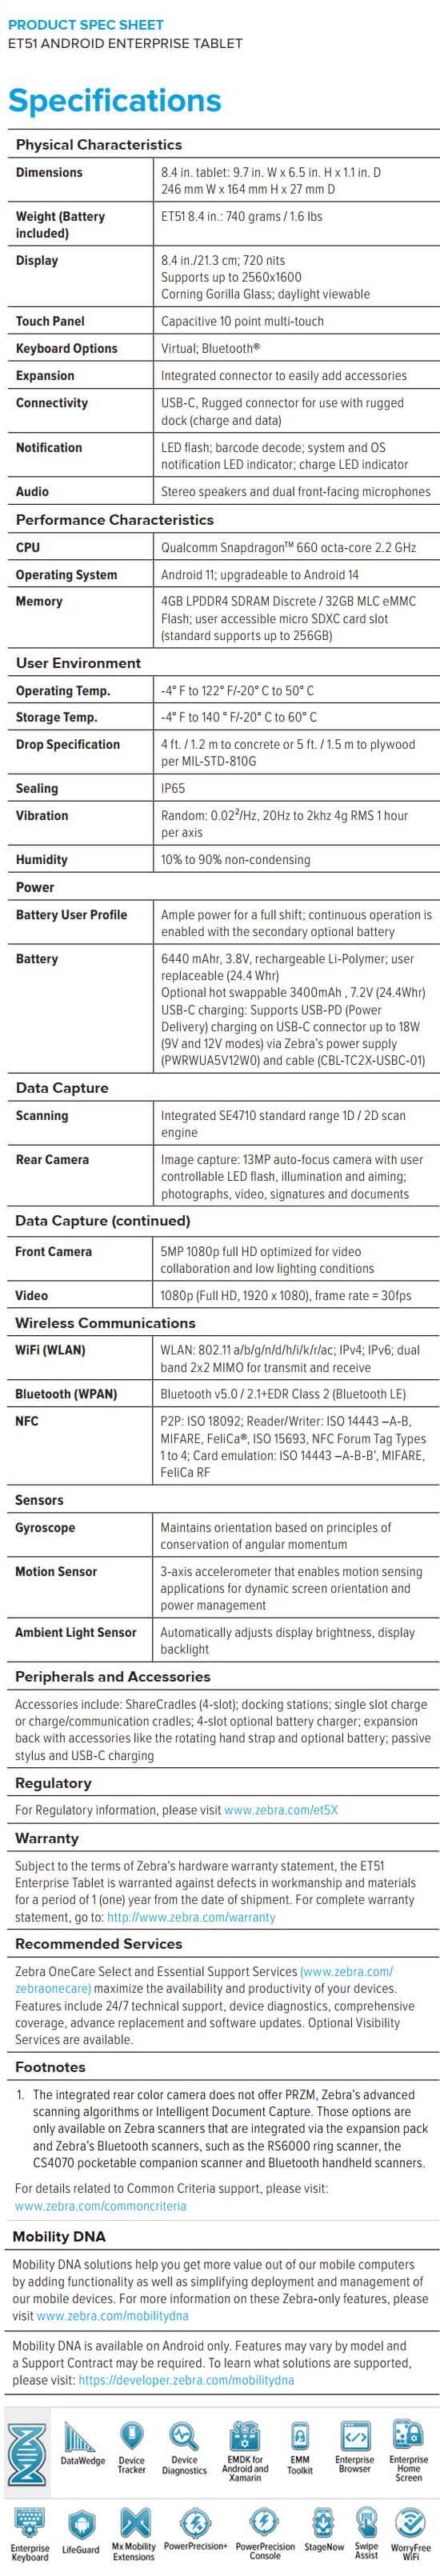 Ficha técnica de Zebra ET51 Android Enterprise con escáner de código de barras 1D_2D integrado